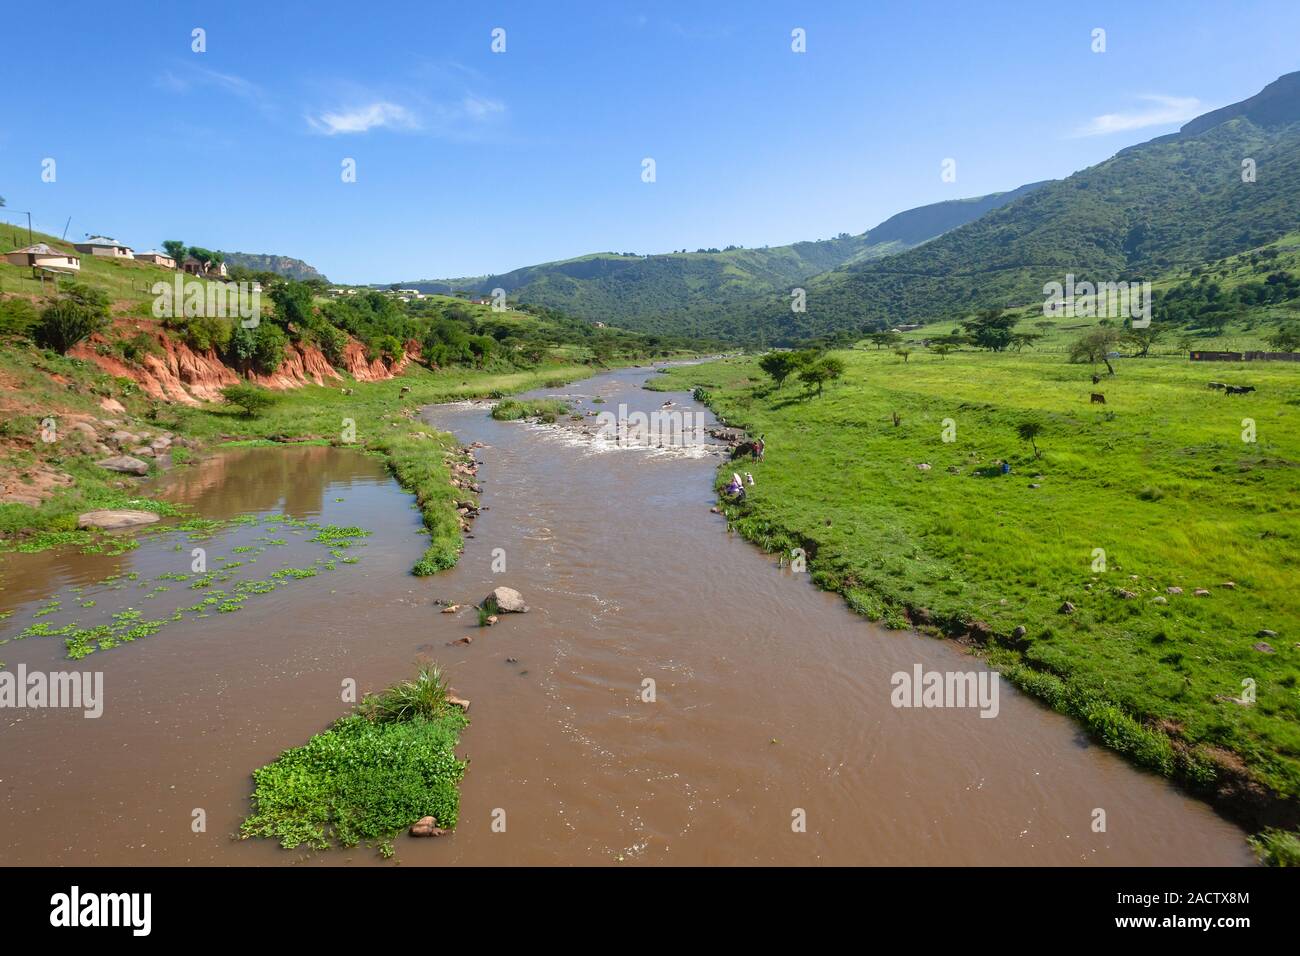 Con vistas a río que fluye el agua en las zonas rurales valle con colinas circundantes verano verde paisaje yermo. Foto de stock